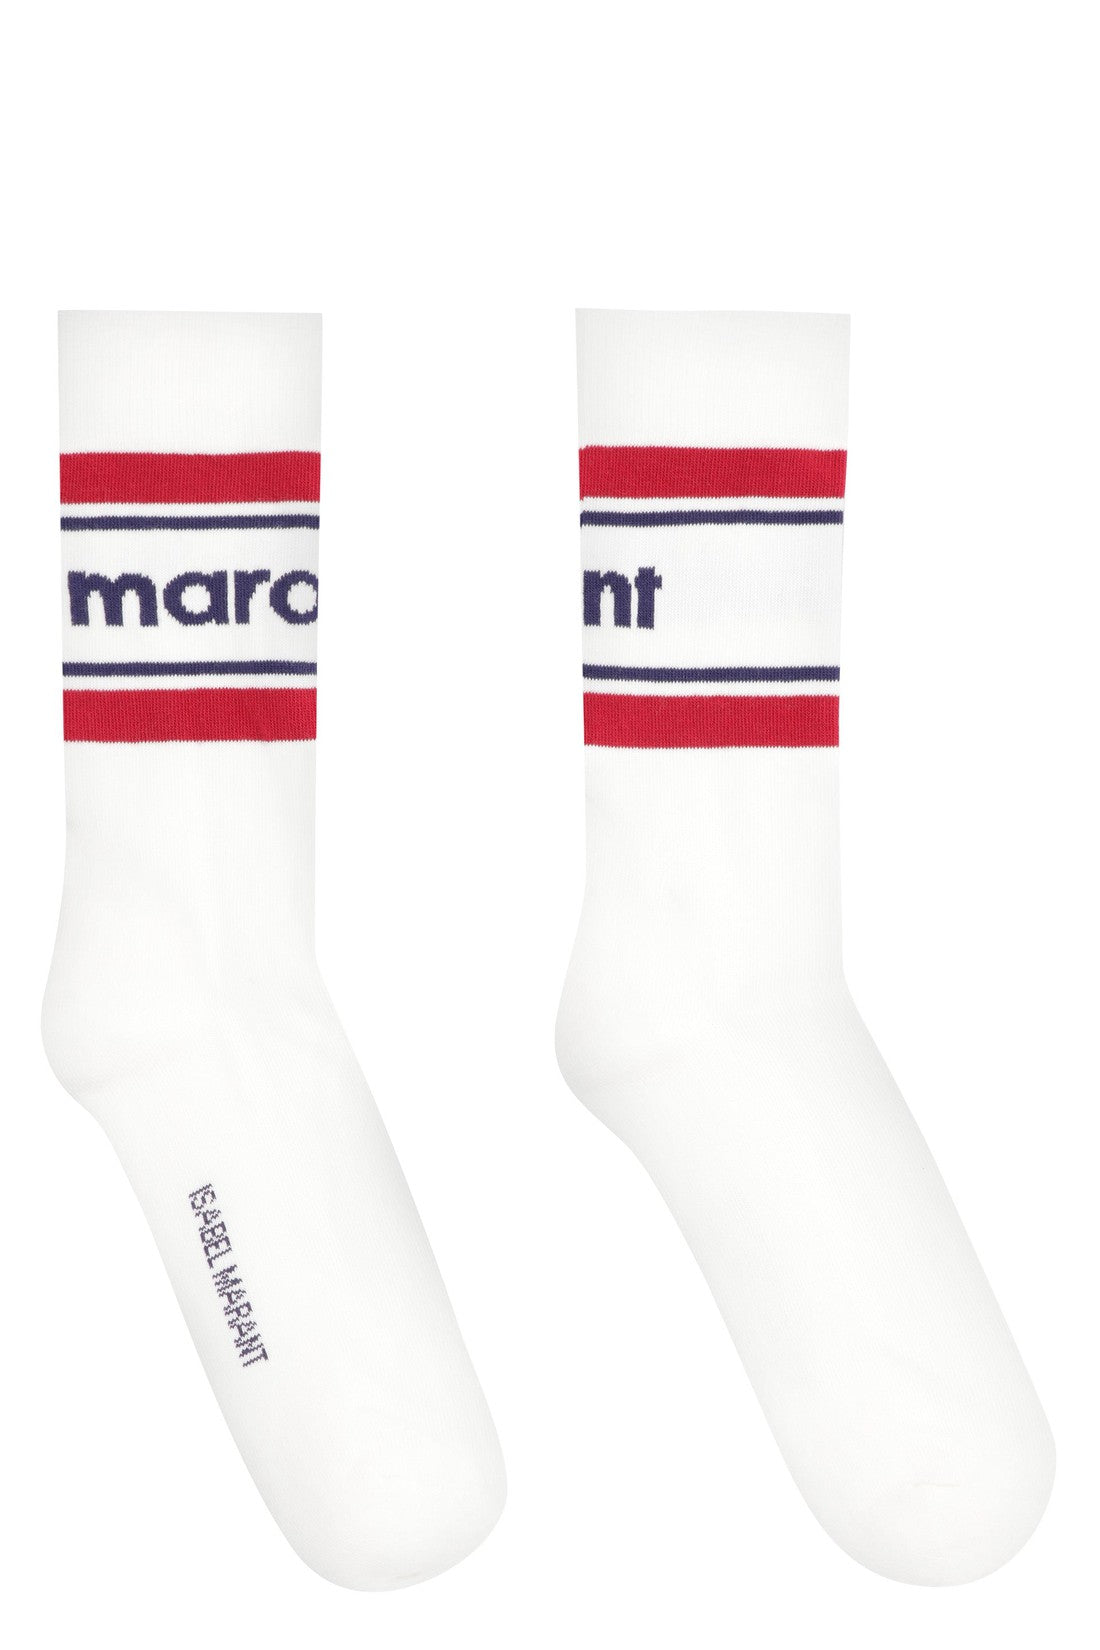 Isabel Marant-OUTLET-SALE-Dona logo cotton blend socks-ARCHIVIST